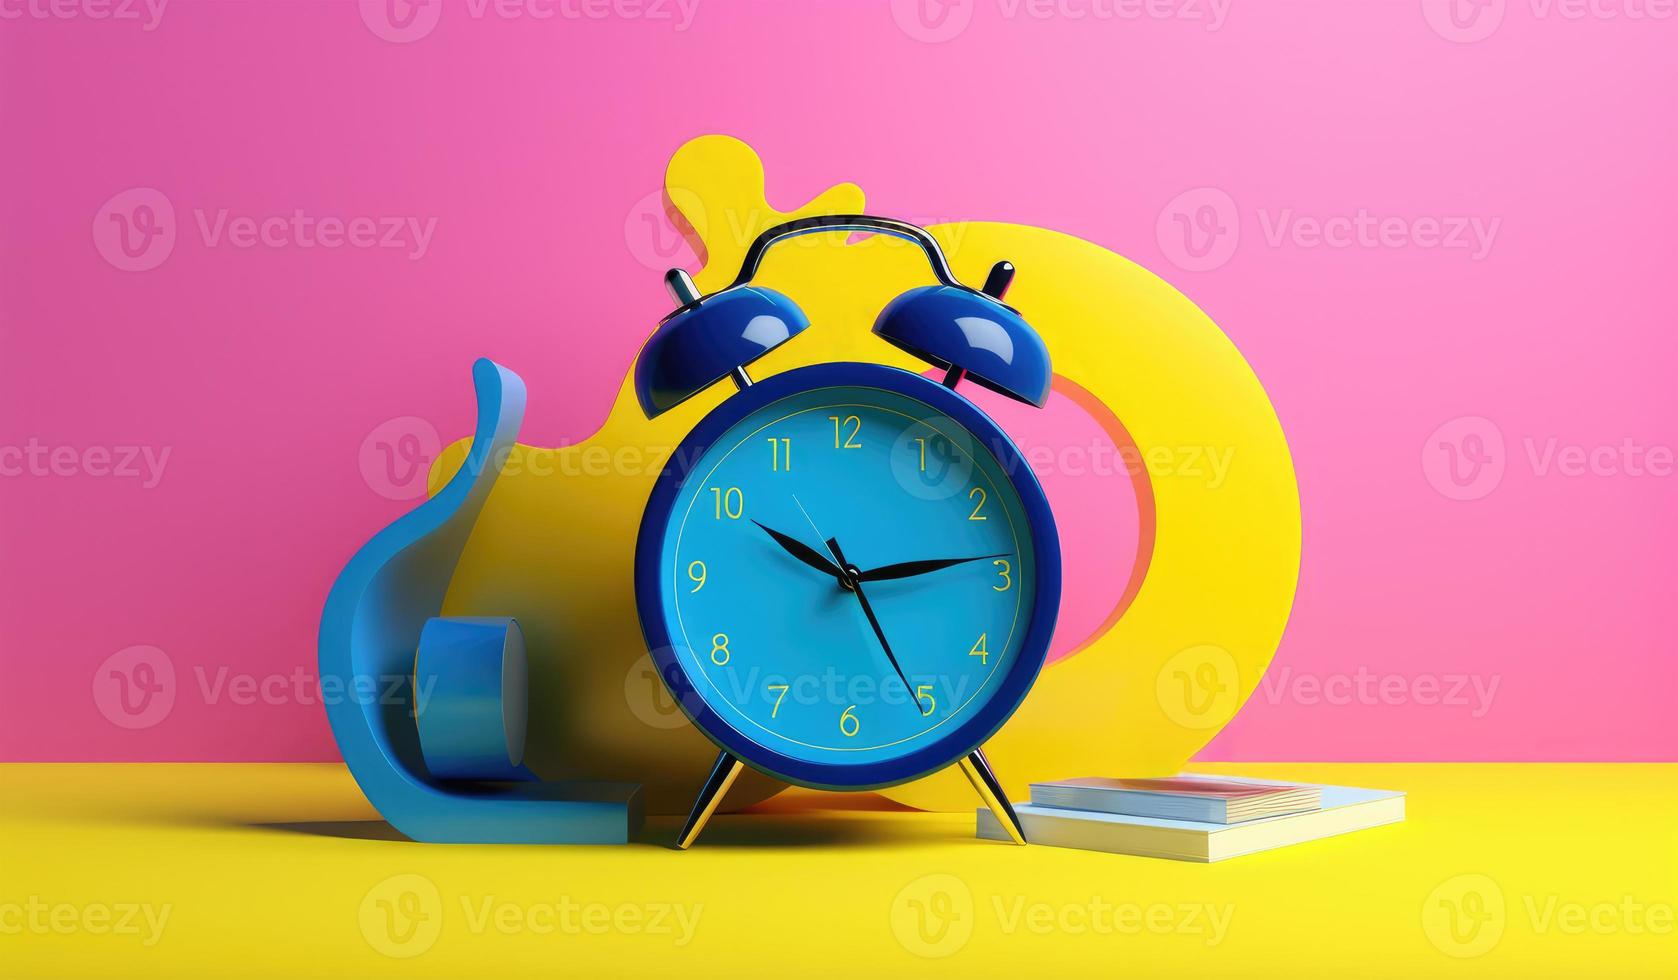 Alarm Uhr und Buch auf Gelb und Rosa Hintergrund foto